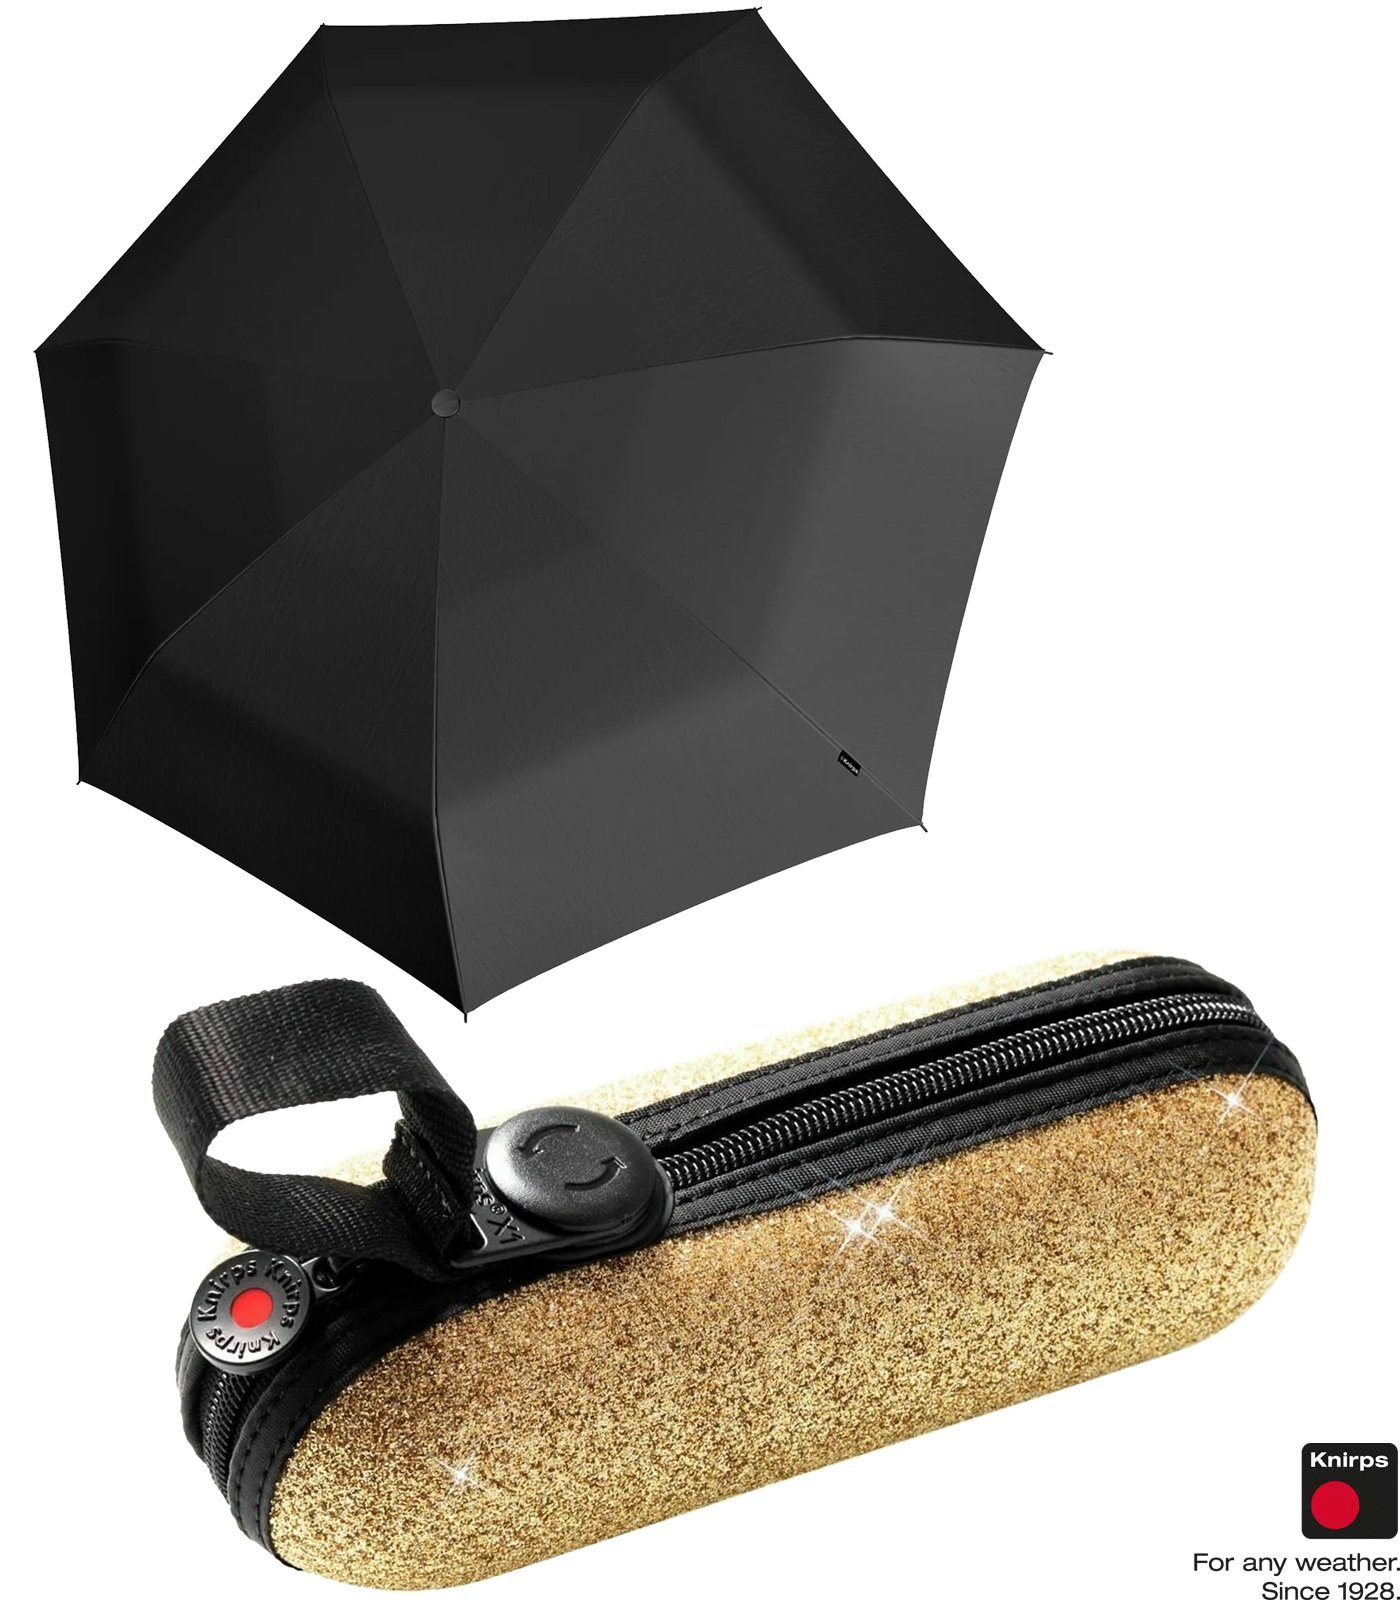 Knirps® Taschenregenschirm X1 Super Mini mit ecorepel-Technologie - 2Glam, der kleine, leichte, kompakte Begleiter gold